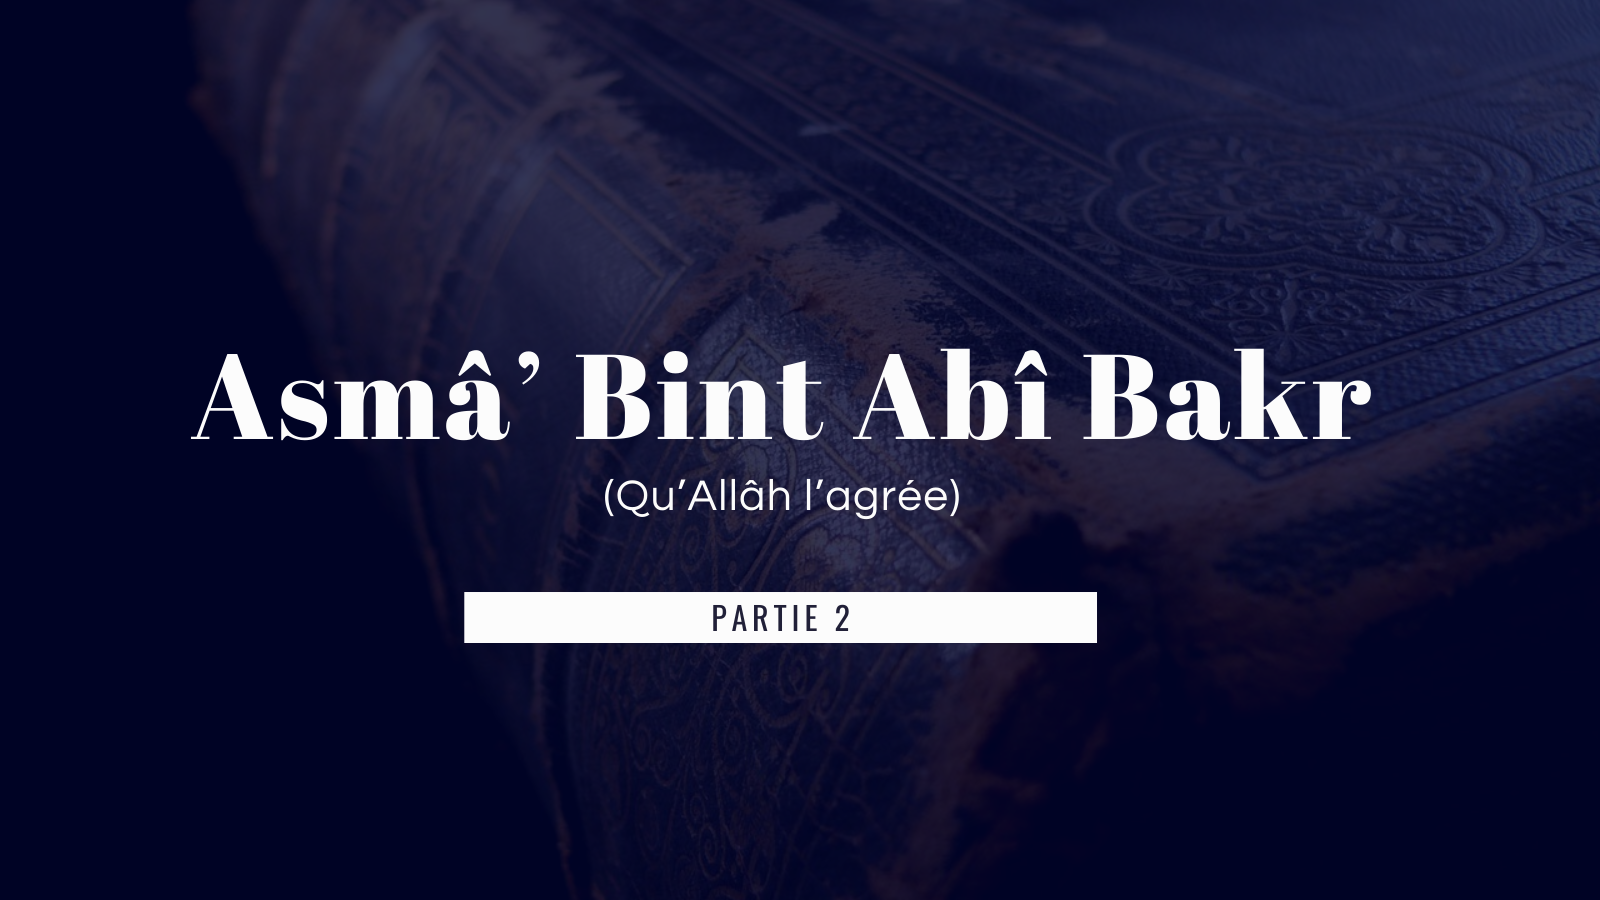 La vie de Asmâ’ Bint Abî Bakr avec le prophète Mohamed (paix et bénédiction de Dieu sur lui) – Partie 2